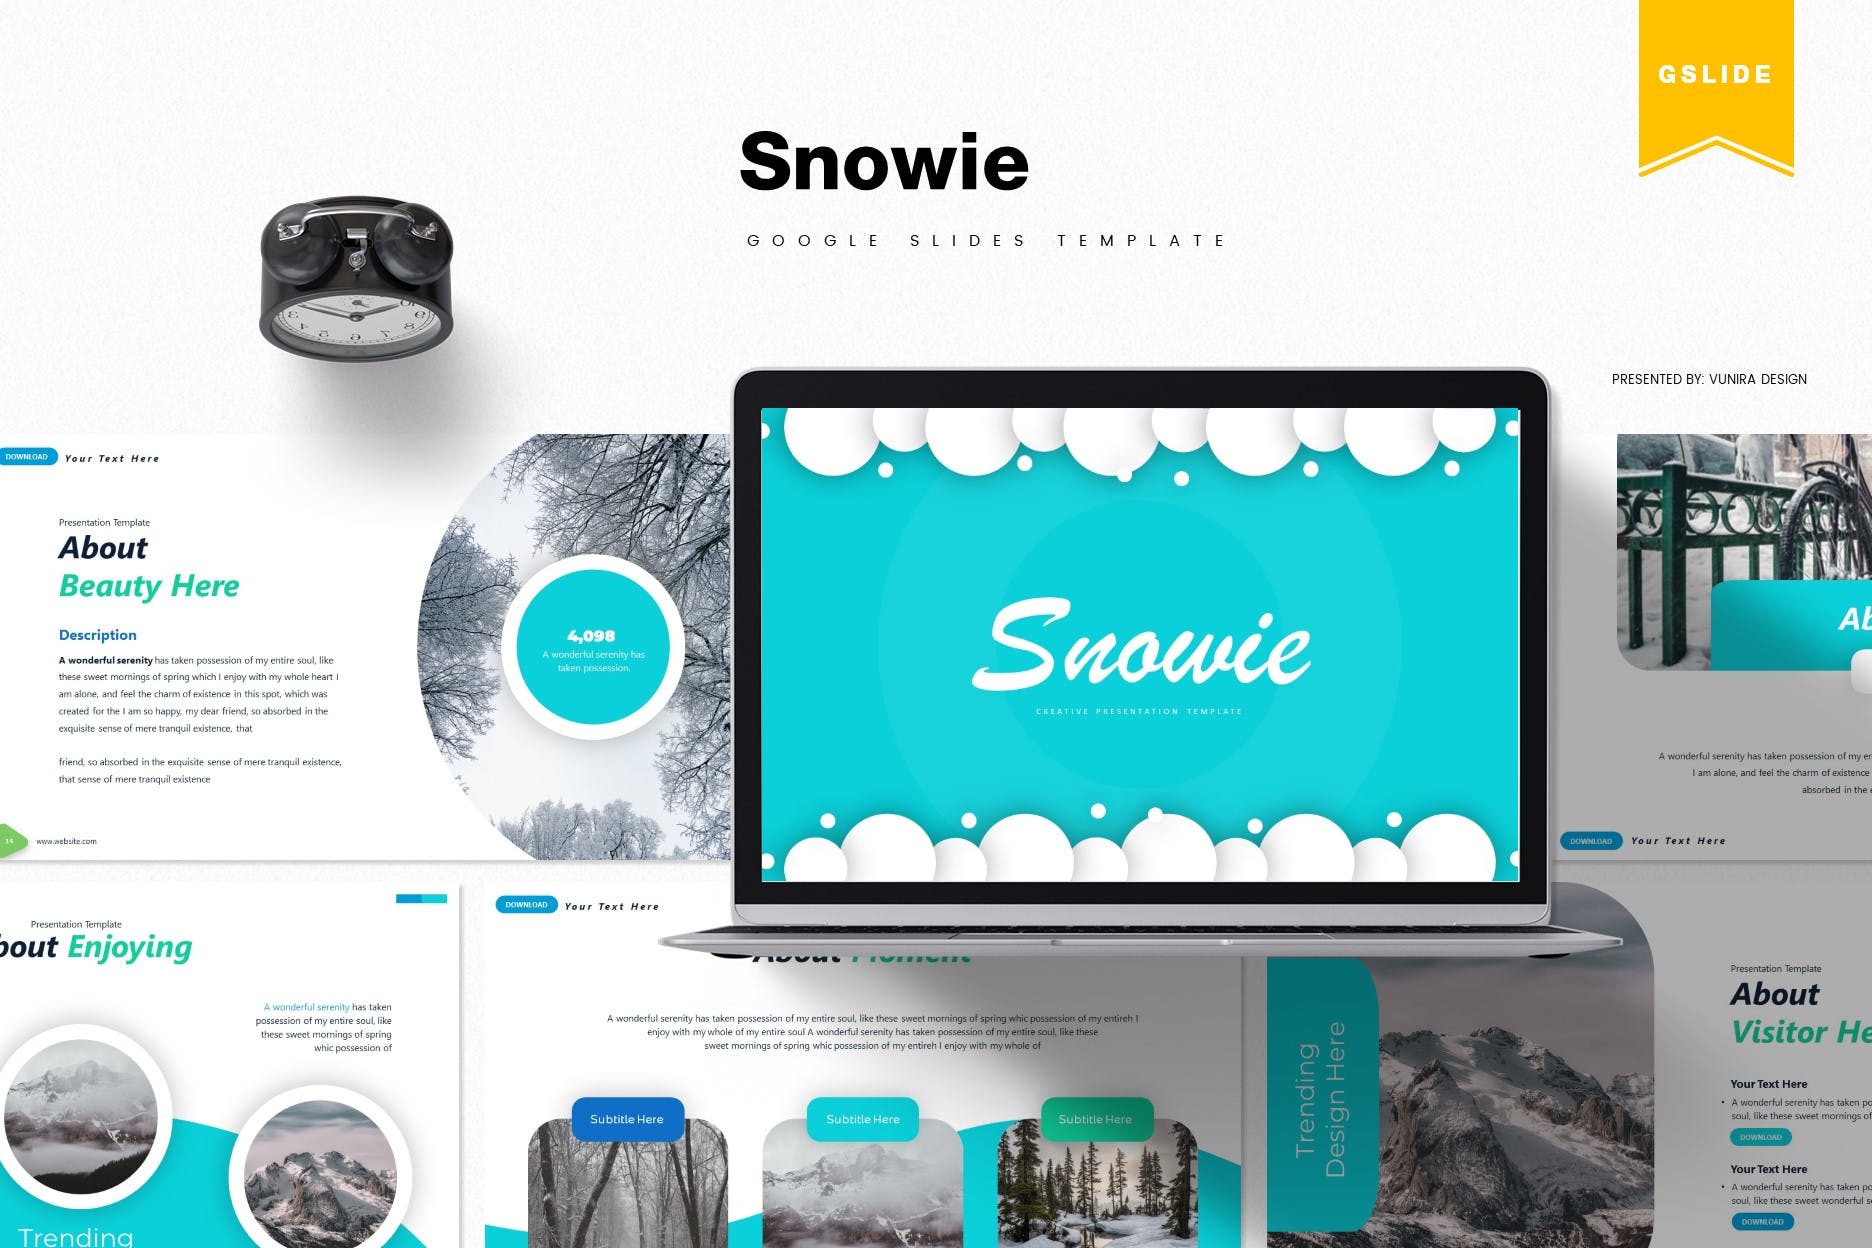 冬天主题风格谷歌幻灯片设计模板下载 Snowie | Google Slides Template插图